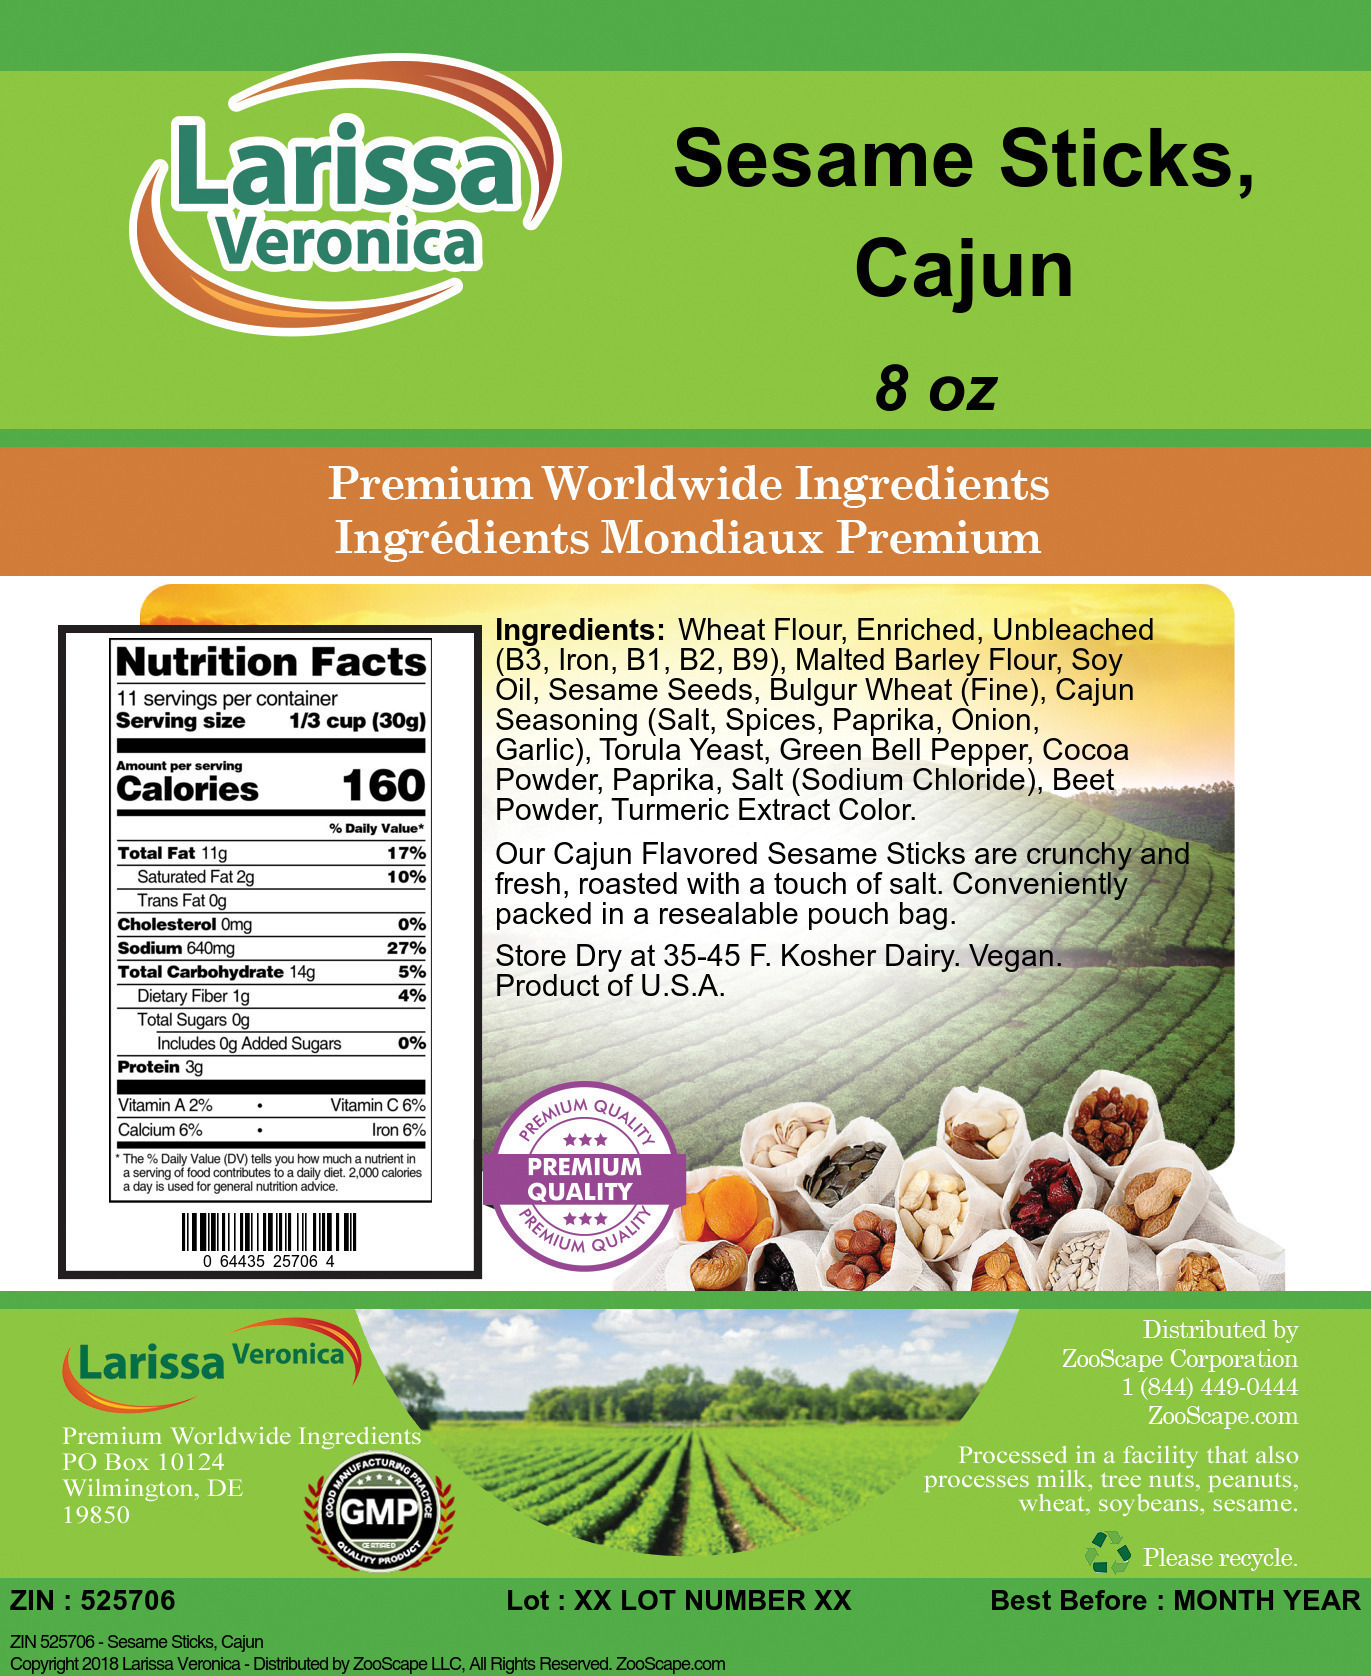 Sesame Sticks, Cajun - Label